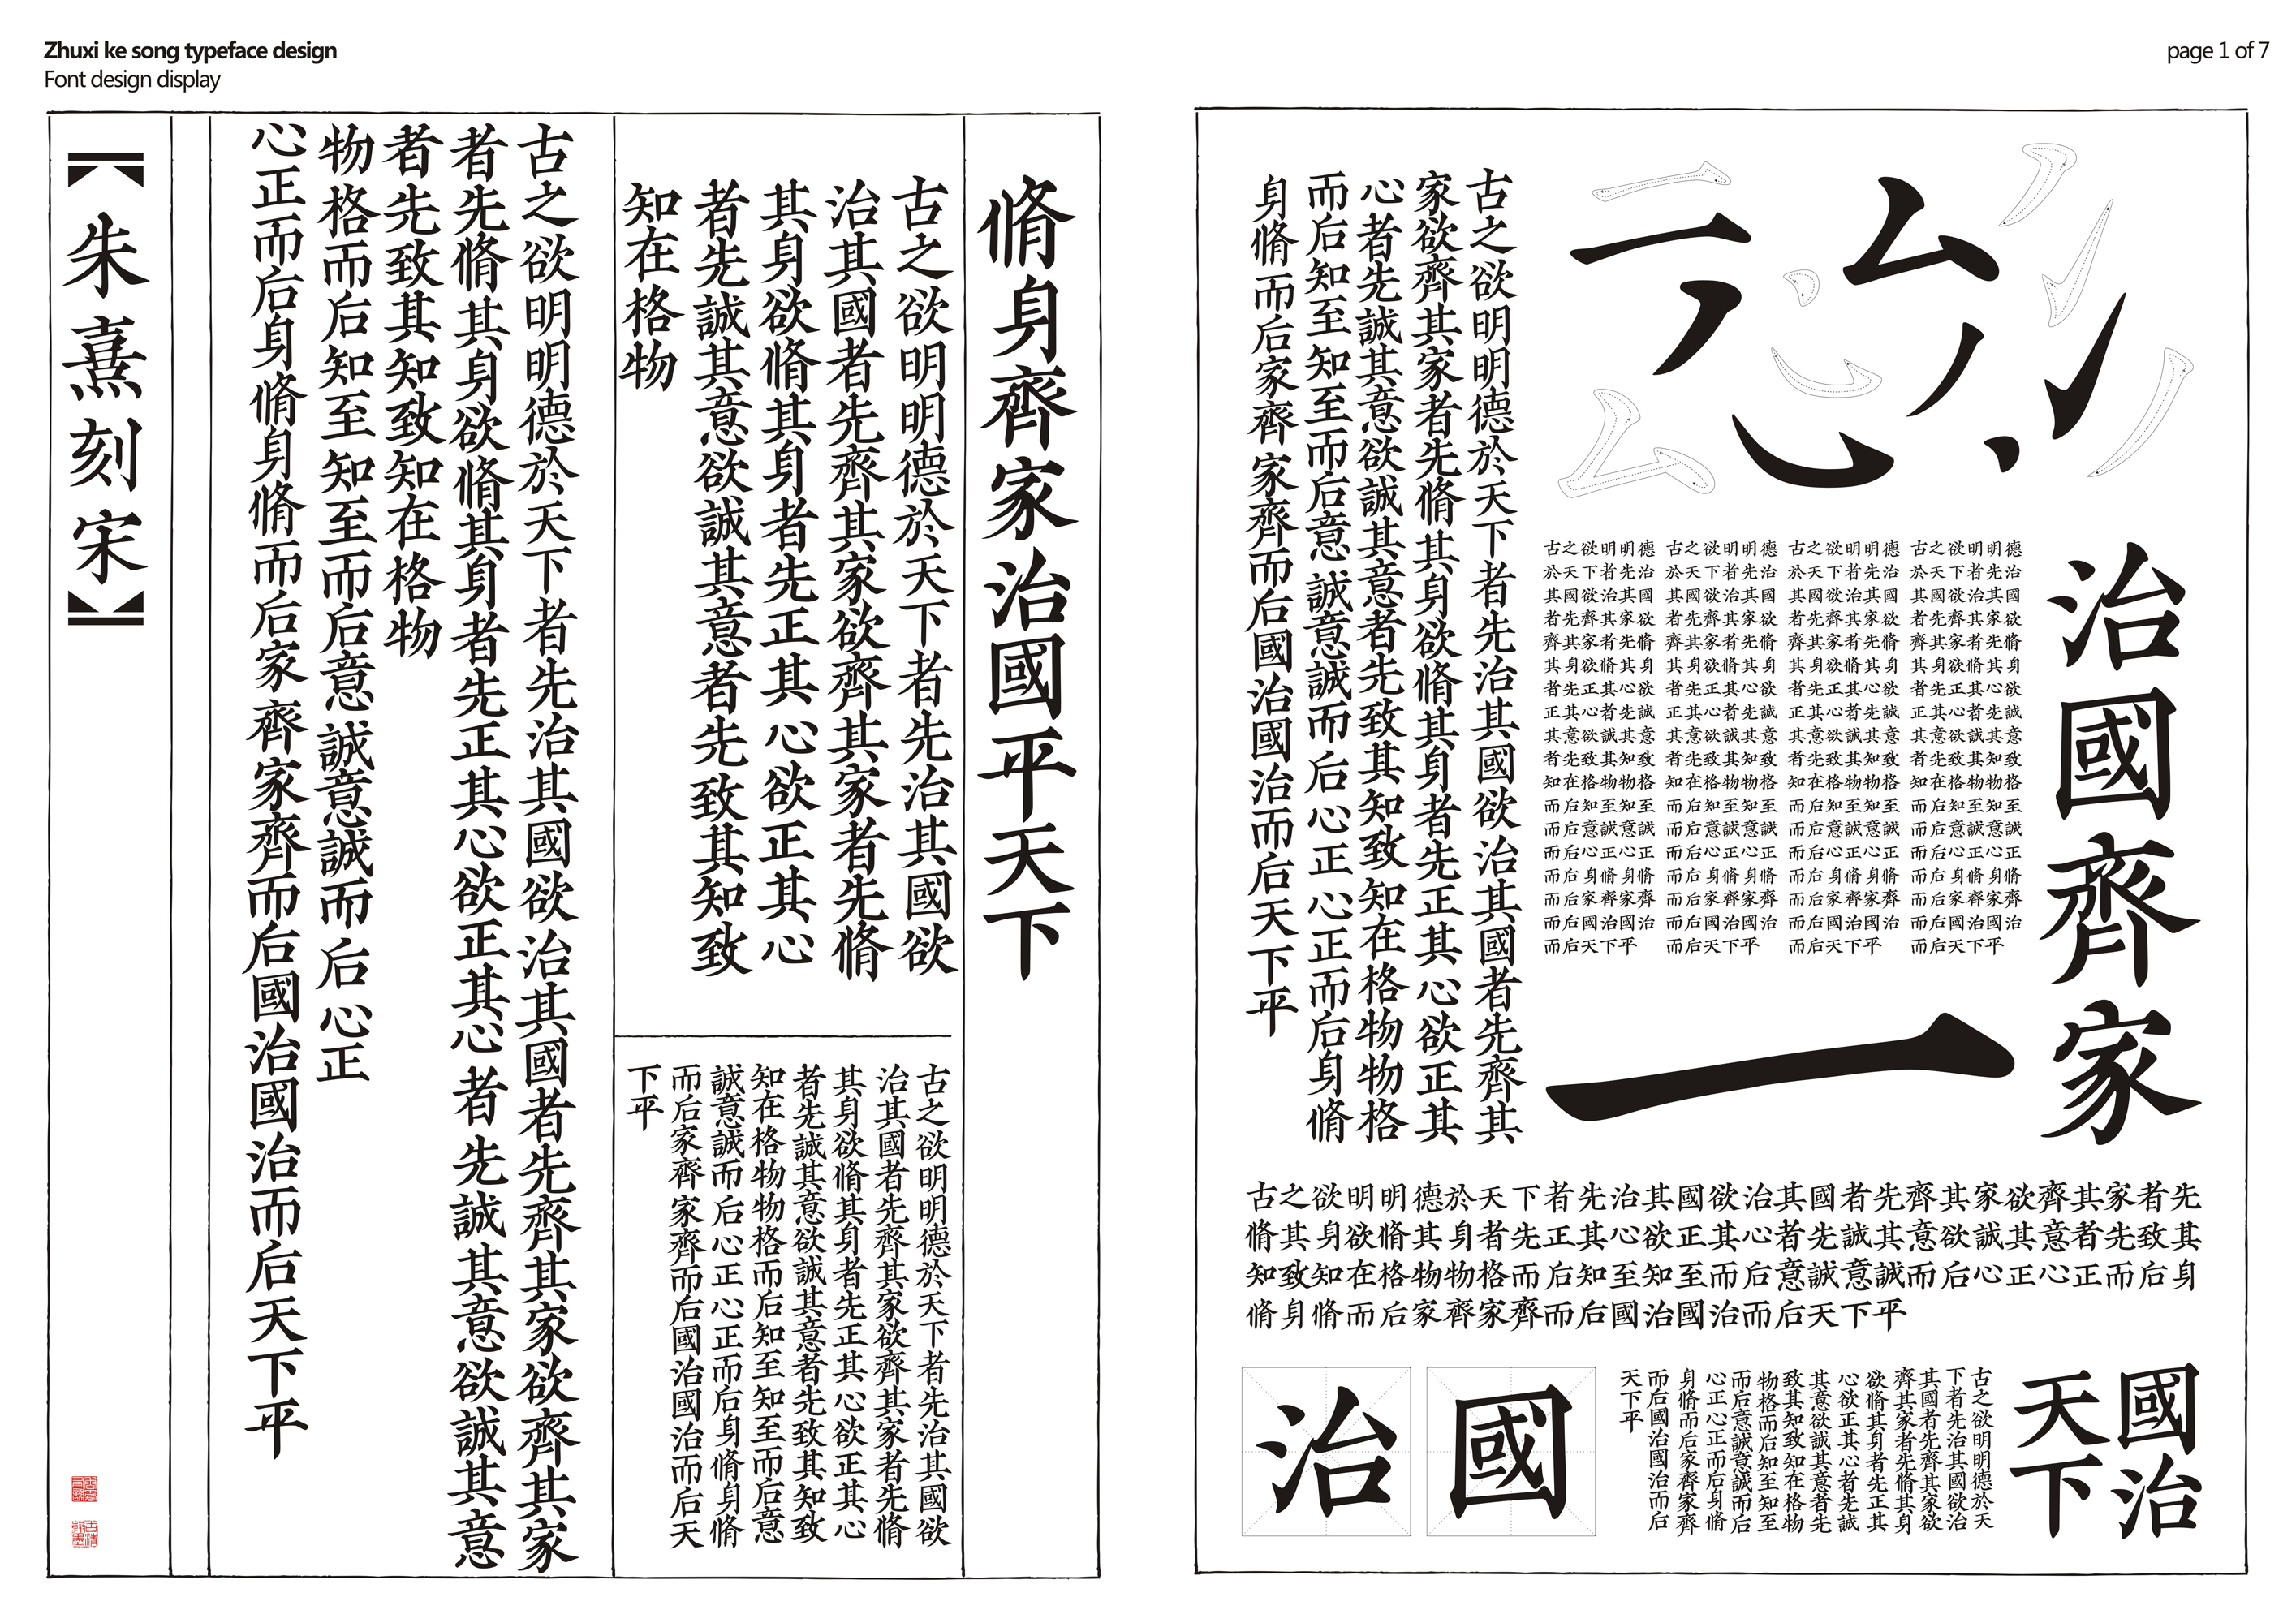 Zhuxi ke song typeface design